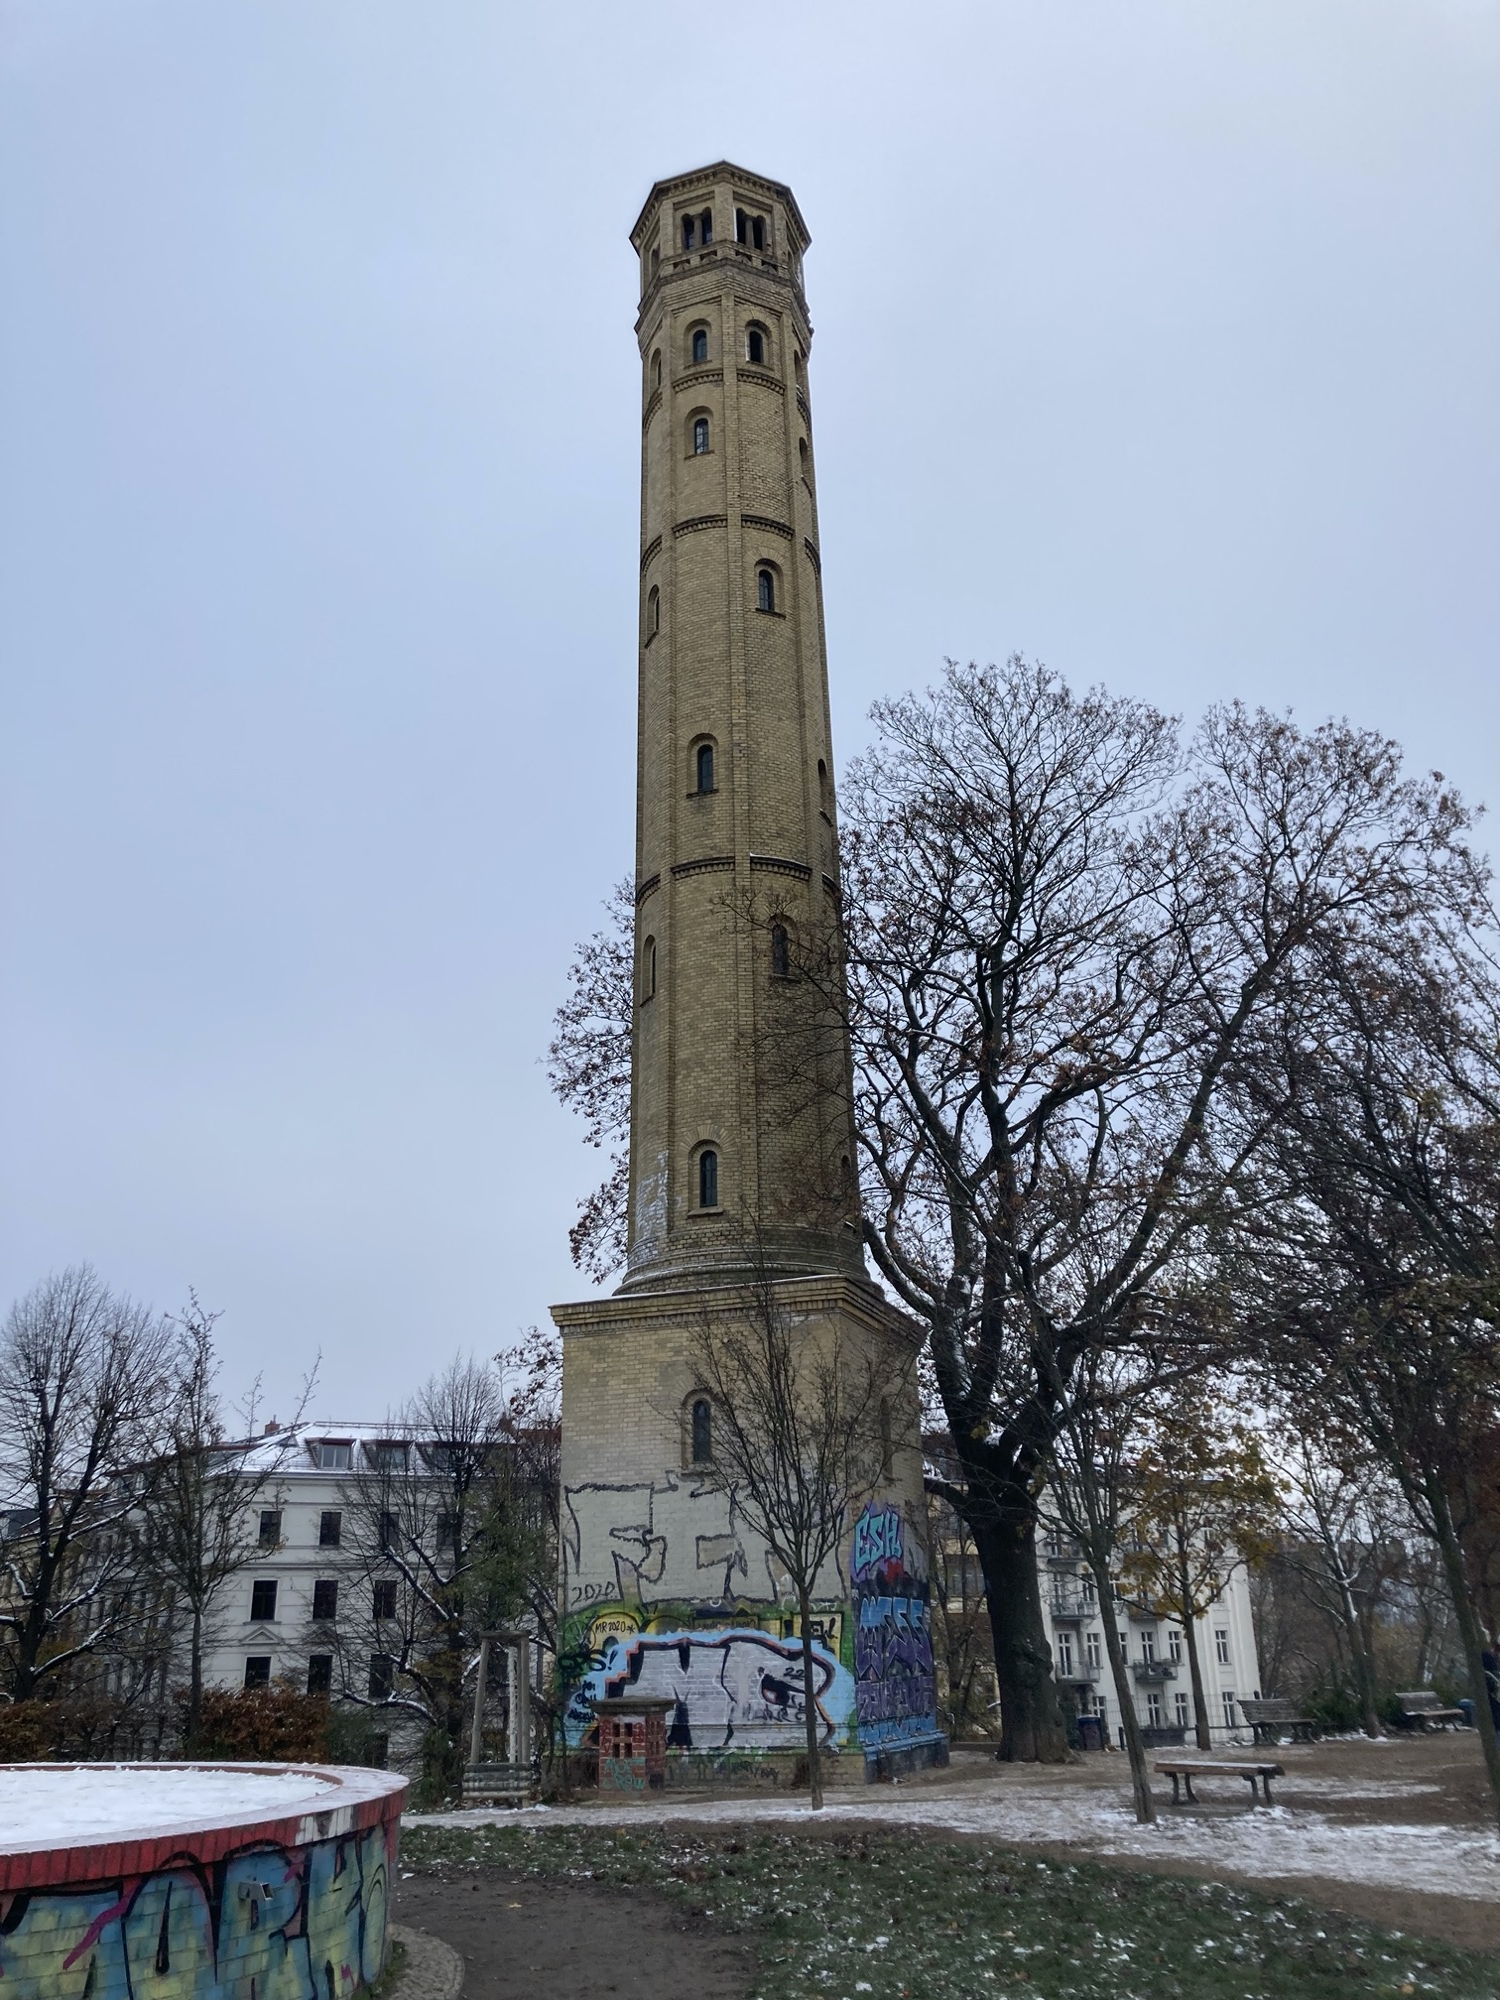 Gesamtansicht des schmäleren Wasserturms auf dem Hügel, eingefasst von blattlosen Bäumen, der untere Bereich des Turms ist mit Graffiti bedeckt